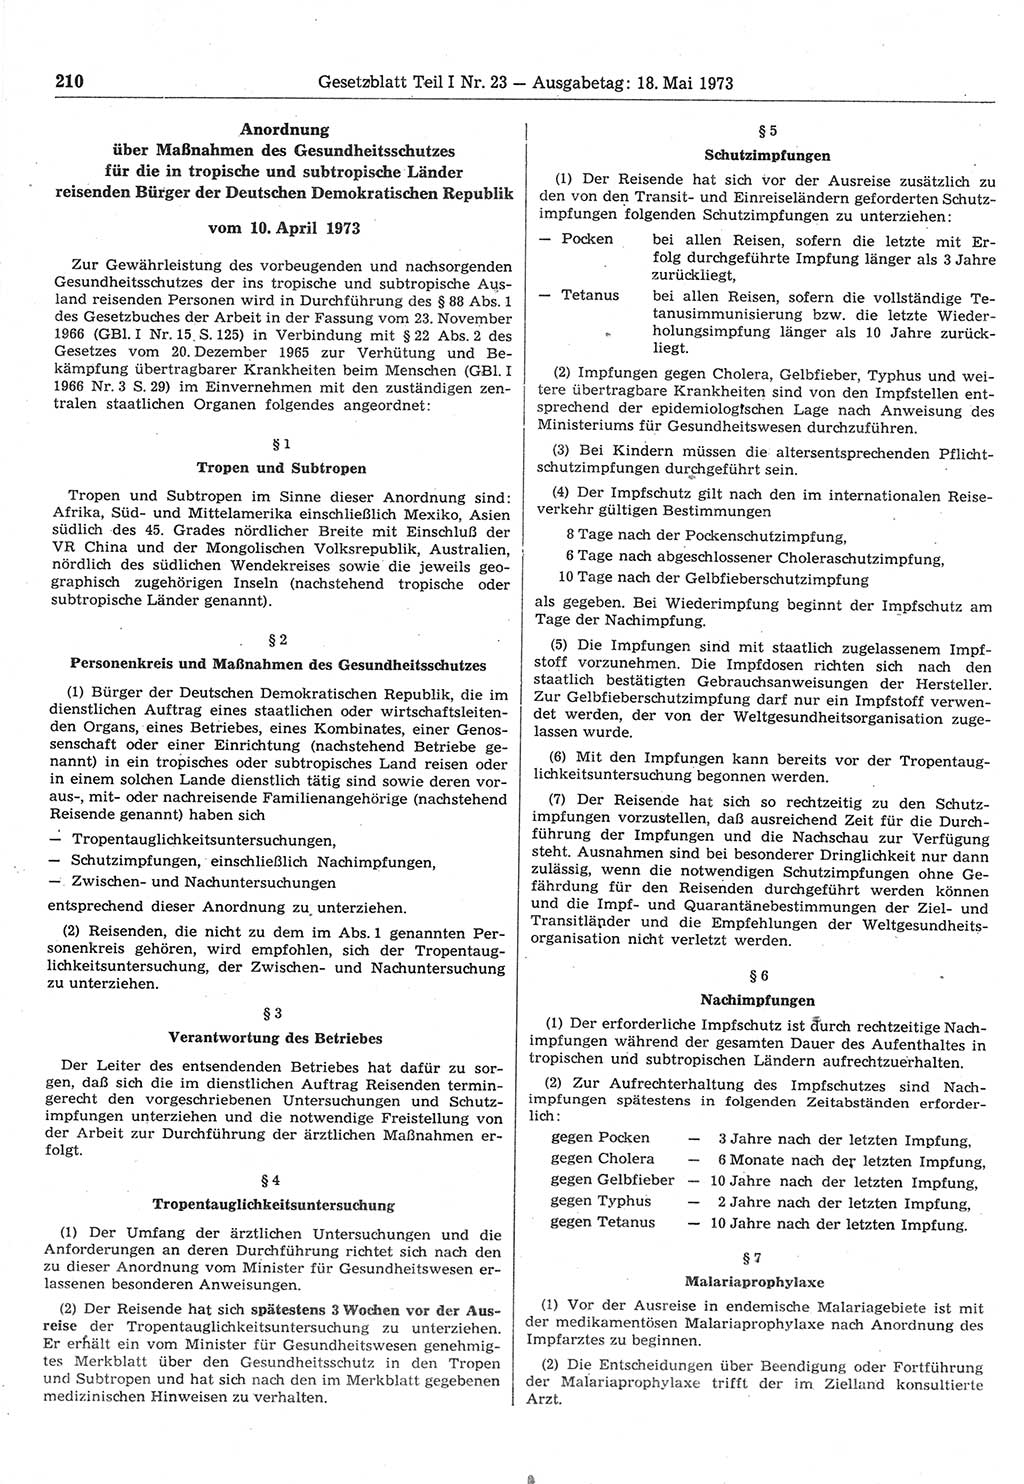 Gesetzblatt (GBl.) der Deutschen Demokratischen Republik (DDR) Teil Ⅰ 1973, Seite 210 (GBl. DDR Ⅰ 1973, S. 210)